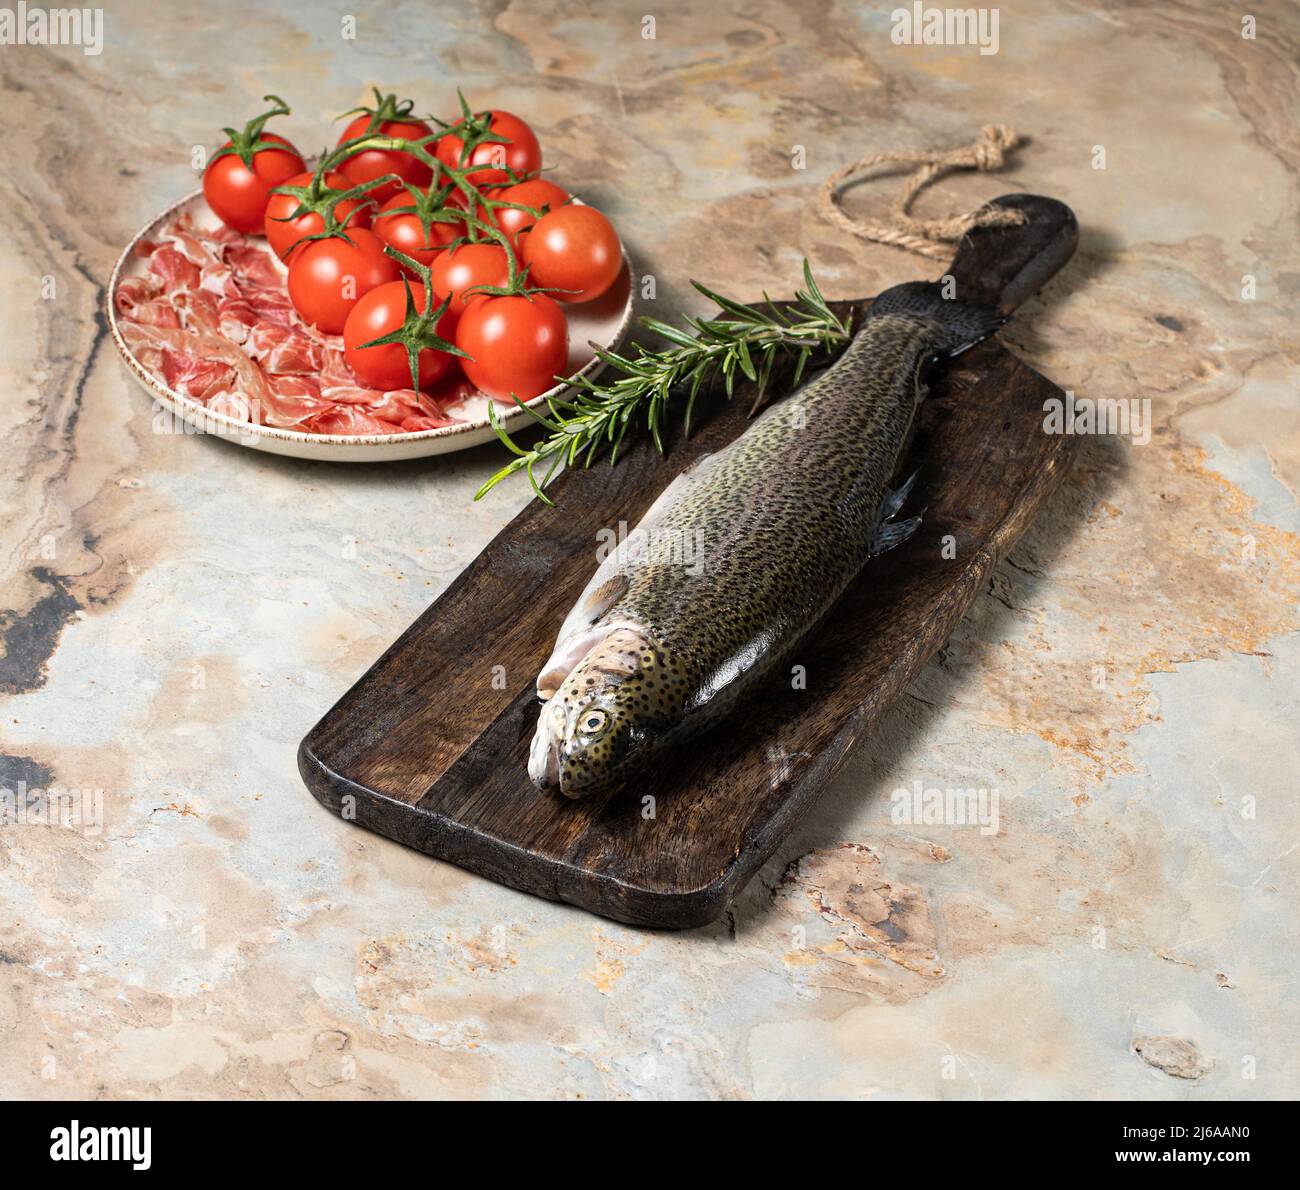 Trota cruda con rosmarino, prosciutto di parma e pomodori su sfondo ligneo vintage, sano concetto di mangiare, pesce. Foto di scorta Foto Stock